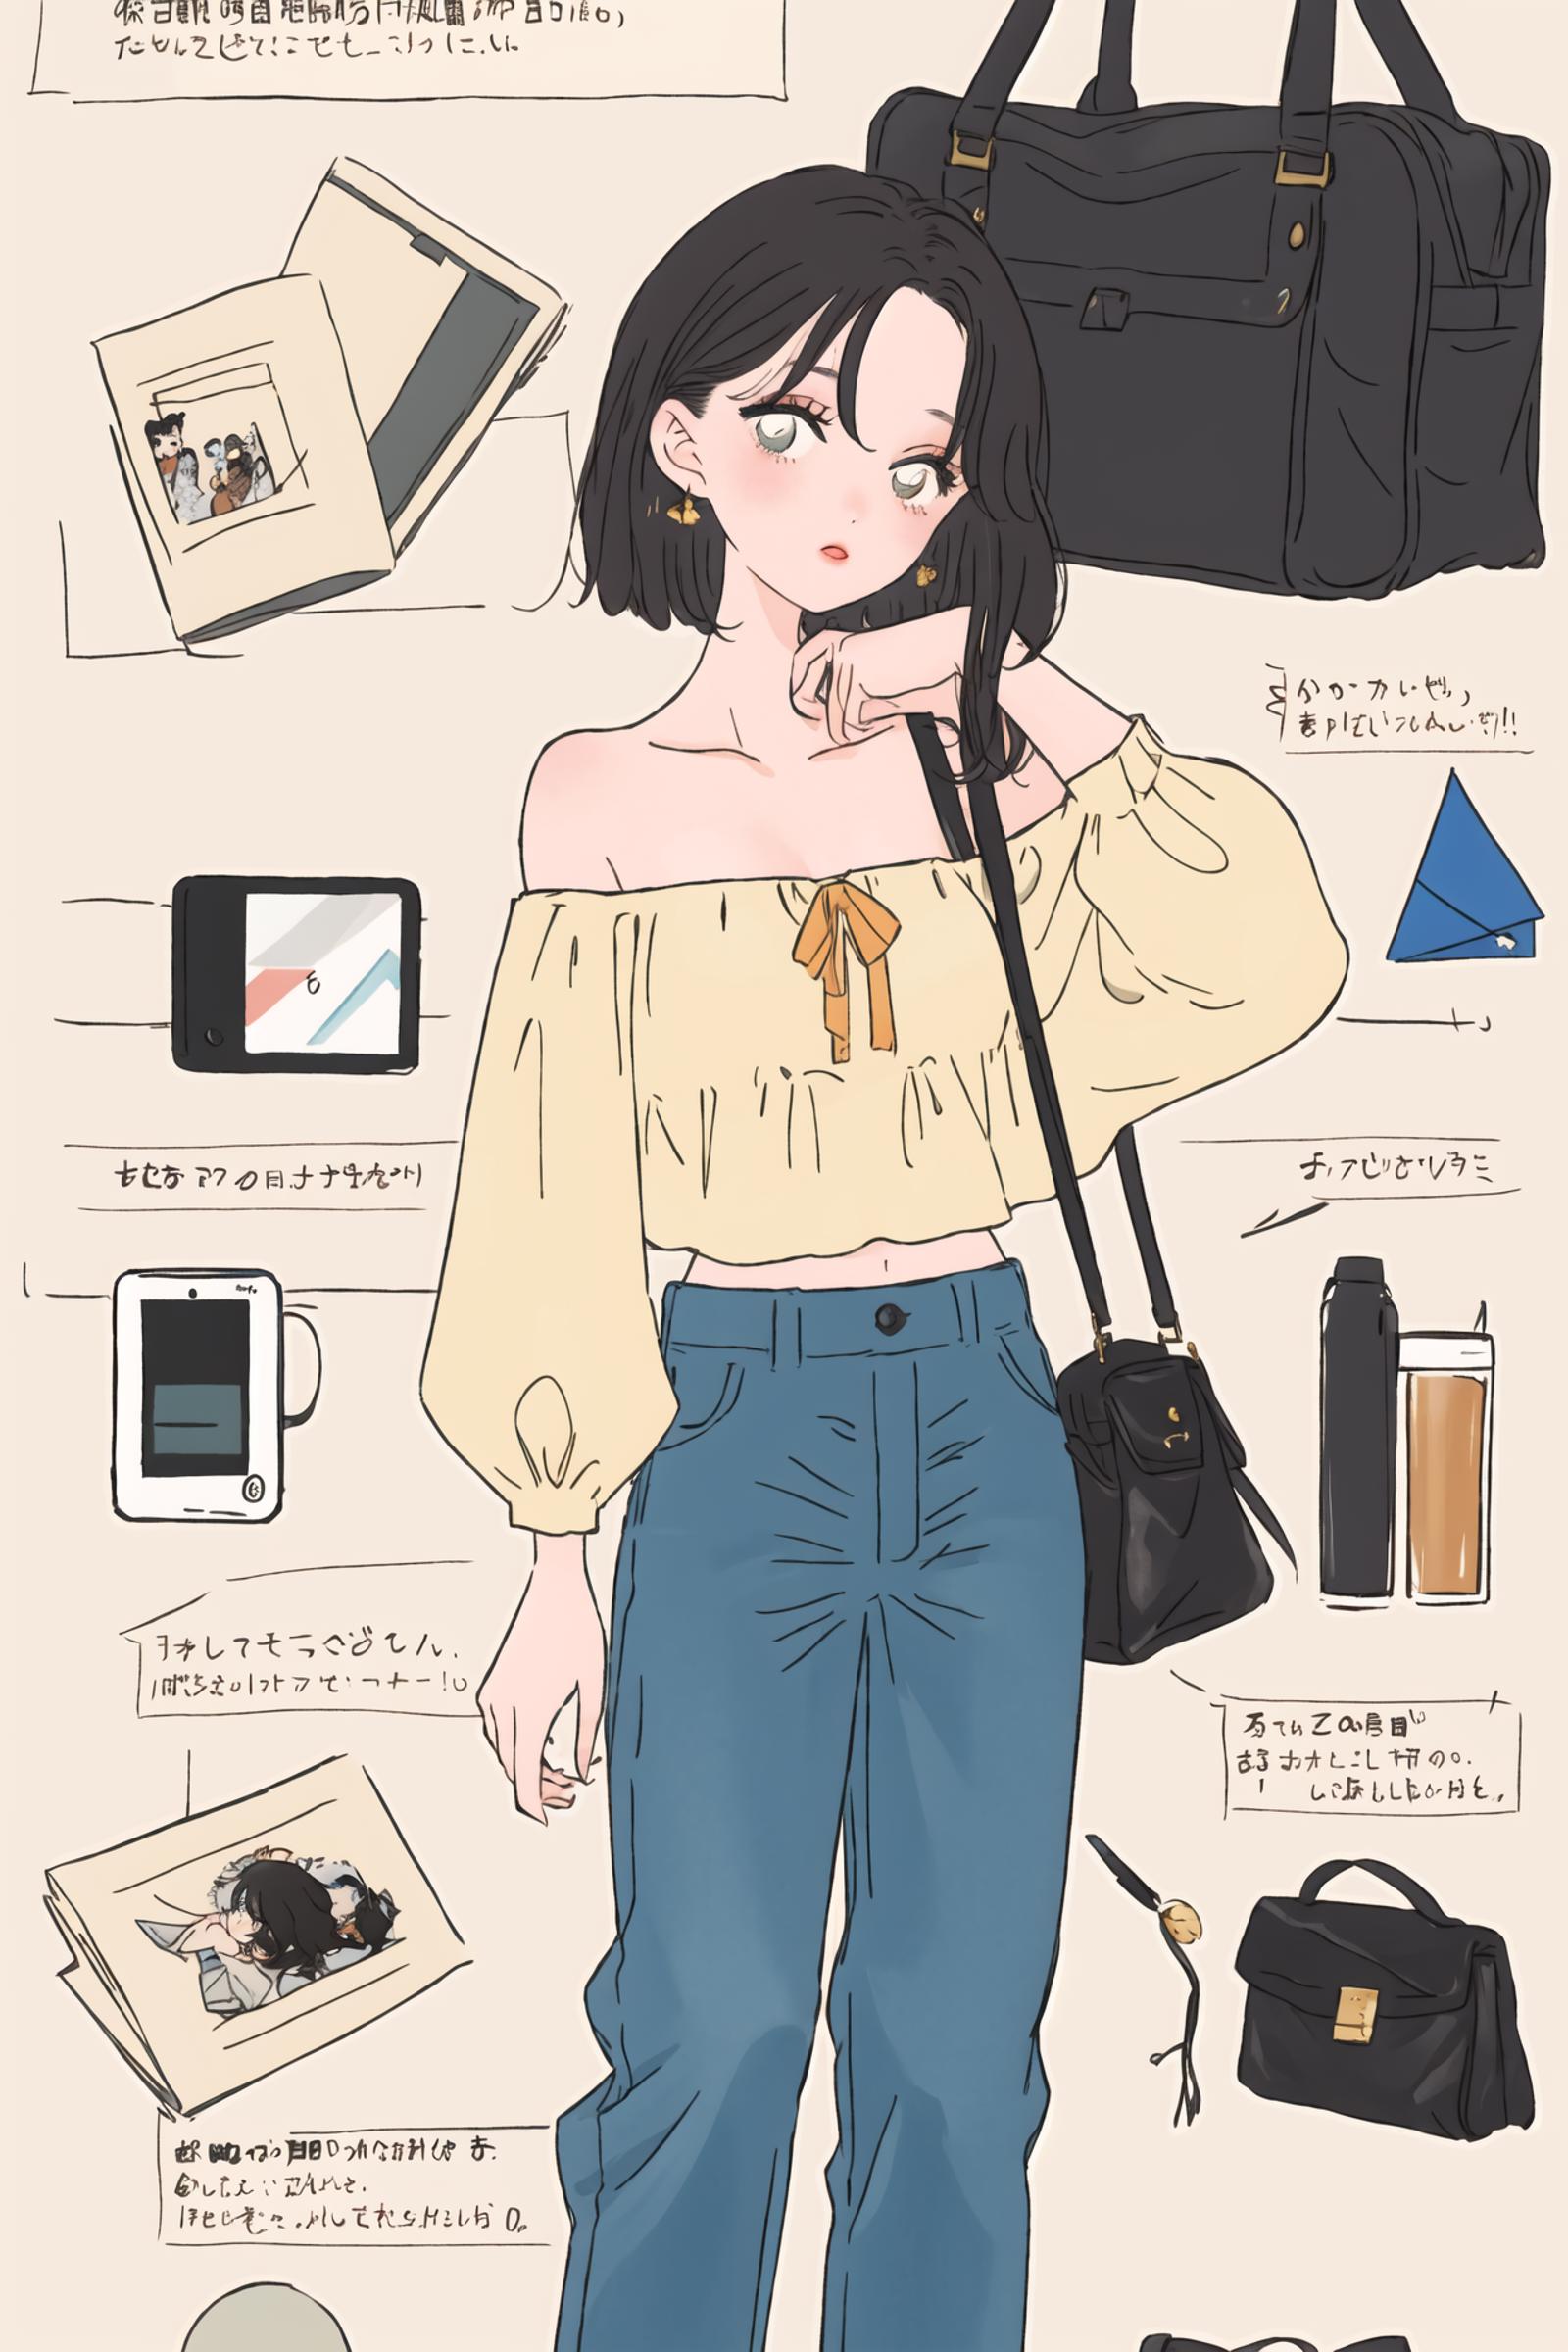 时尚插画风格(Fashion illustration style) image by Baixiu